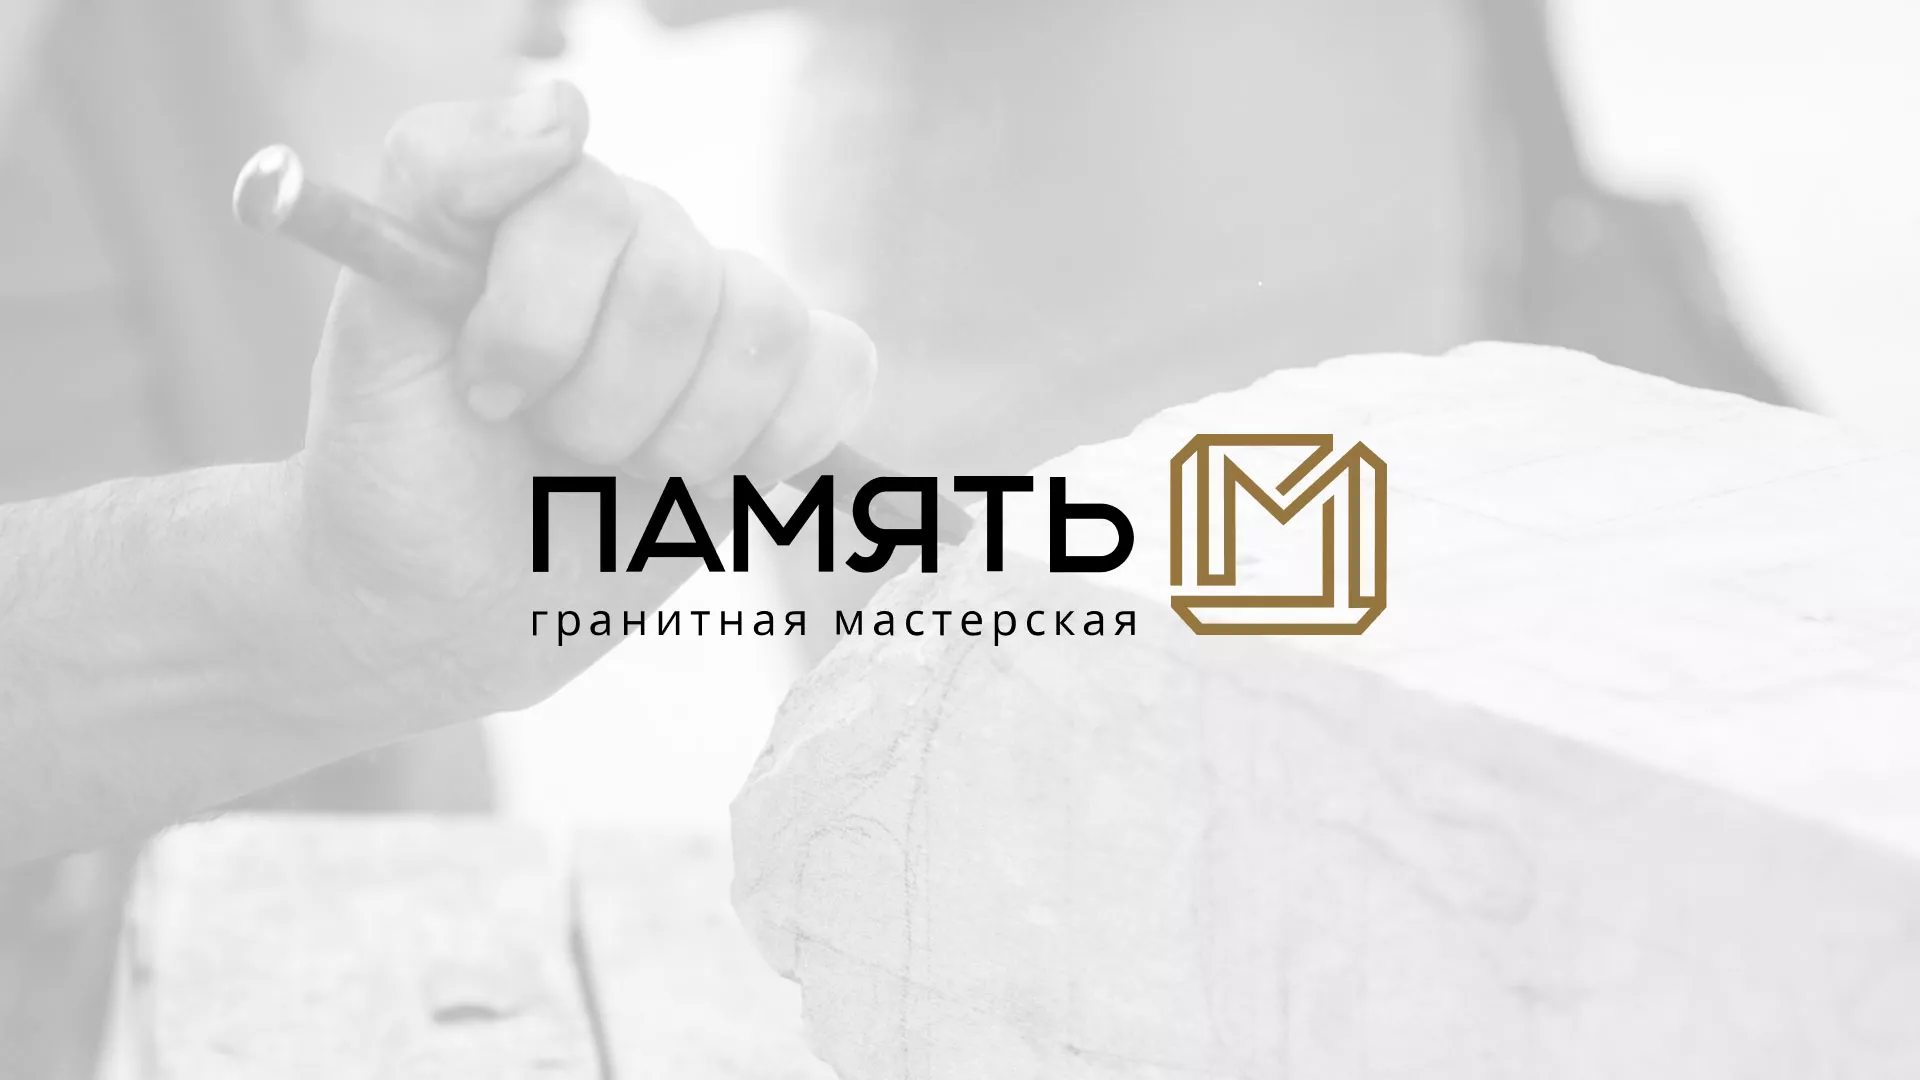 Разработка логотипа и сайта компании «Память-М» в Люберцах